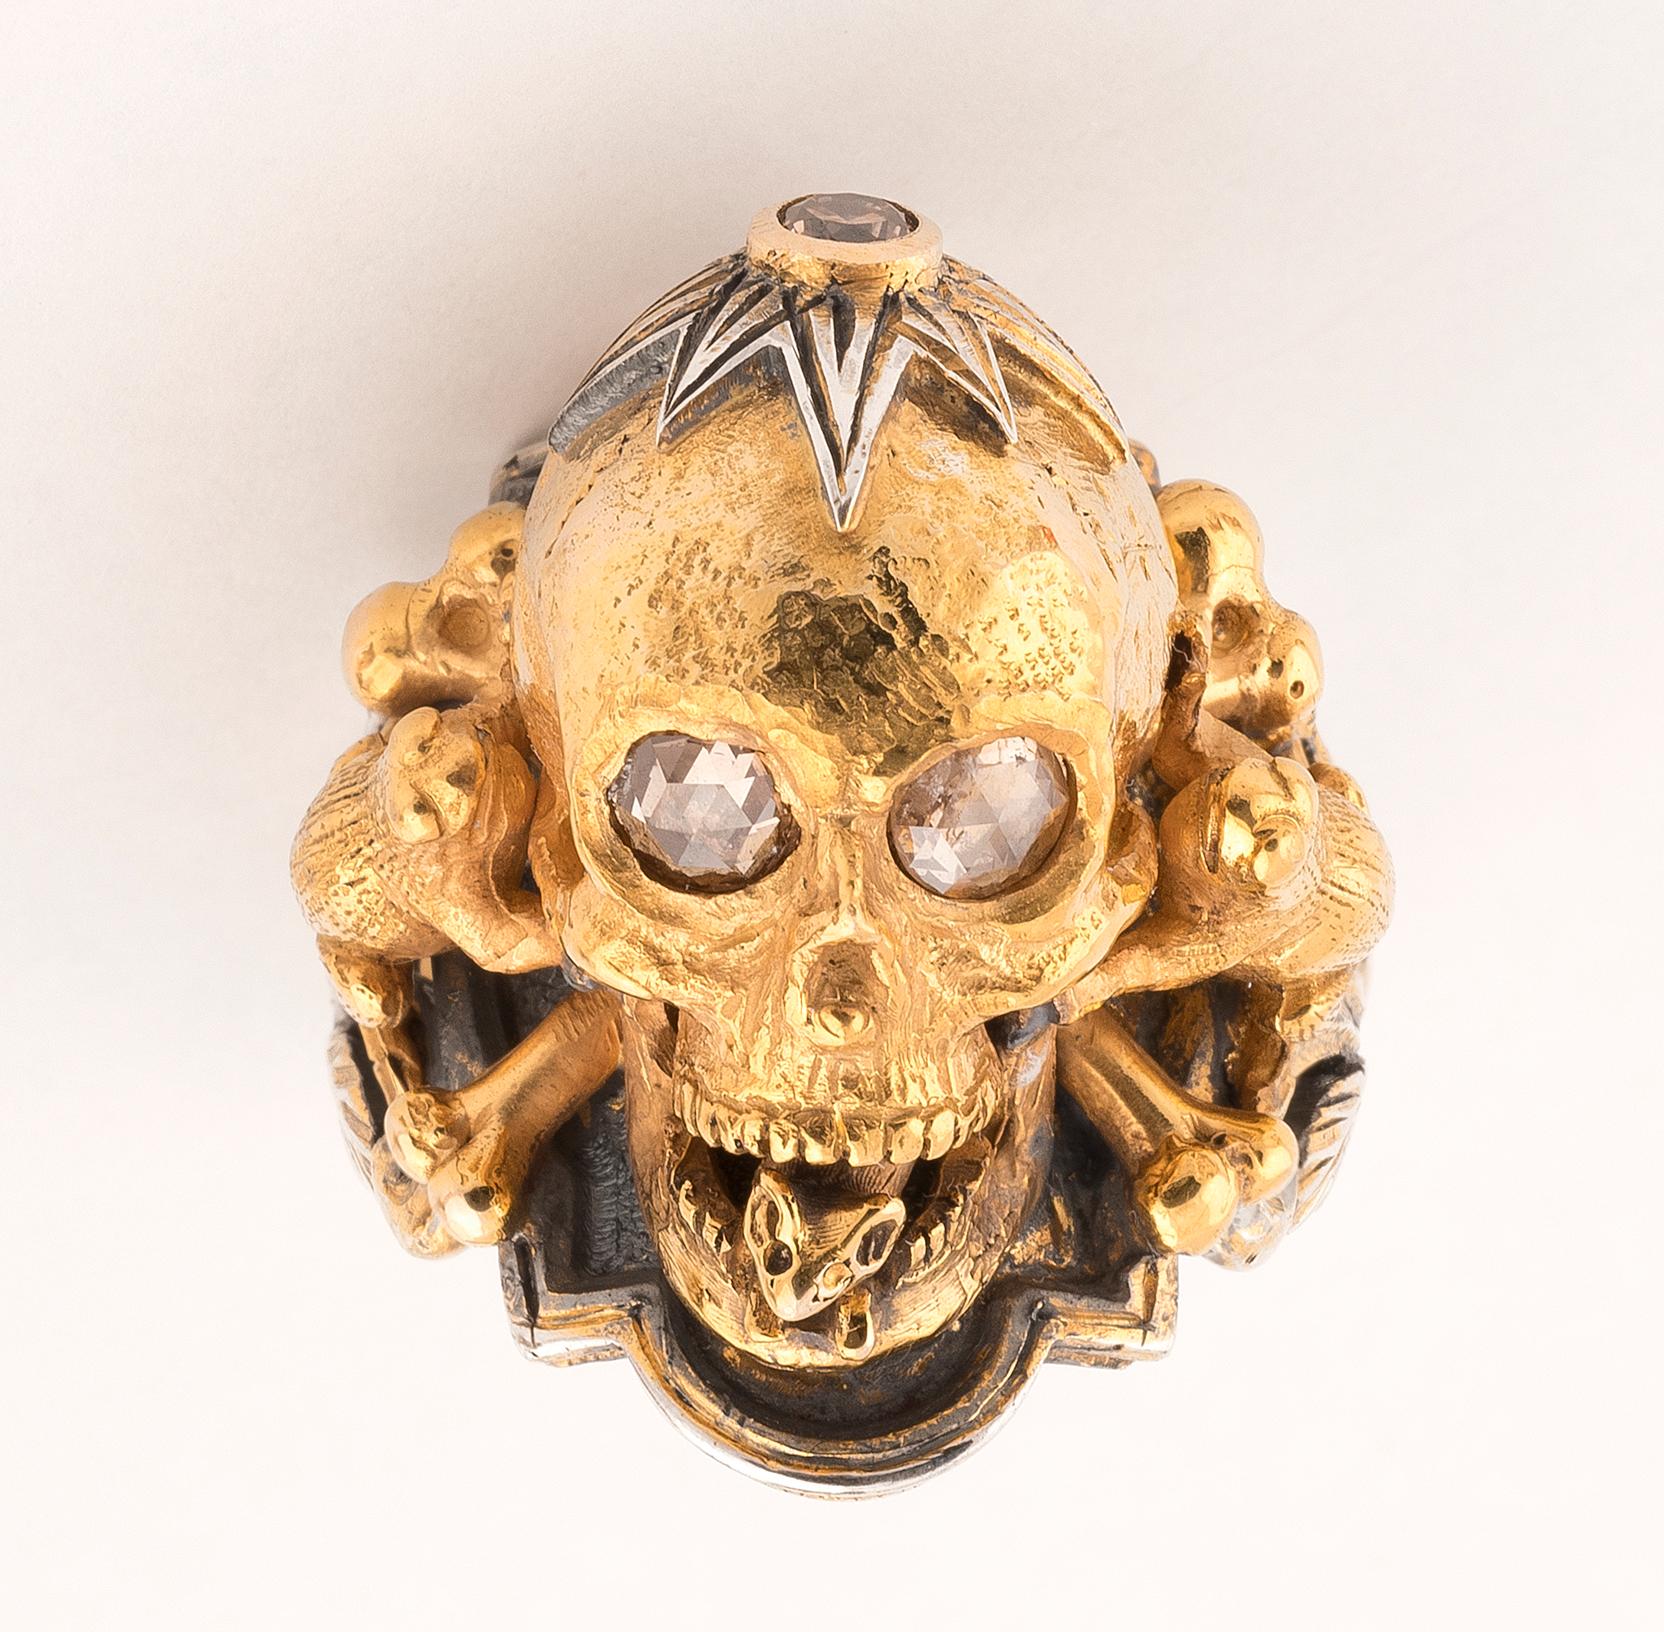 Bernardo Large Gold Silver Diamond Skull Ring für Damen oder Herren